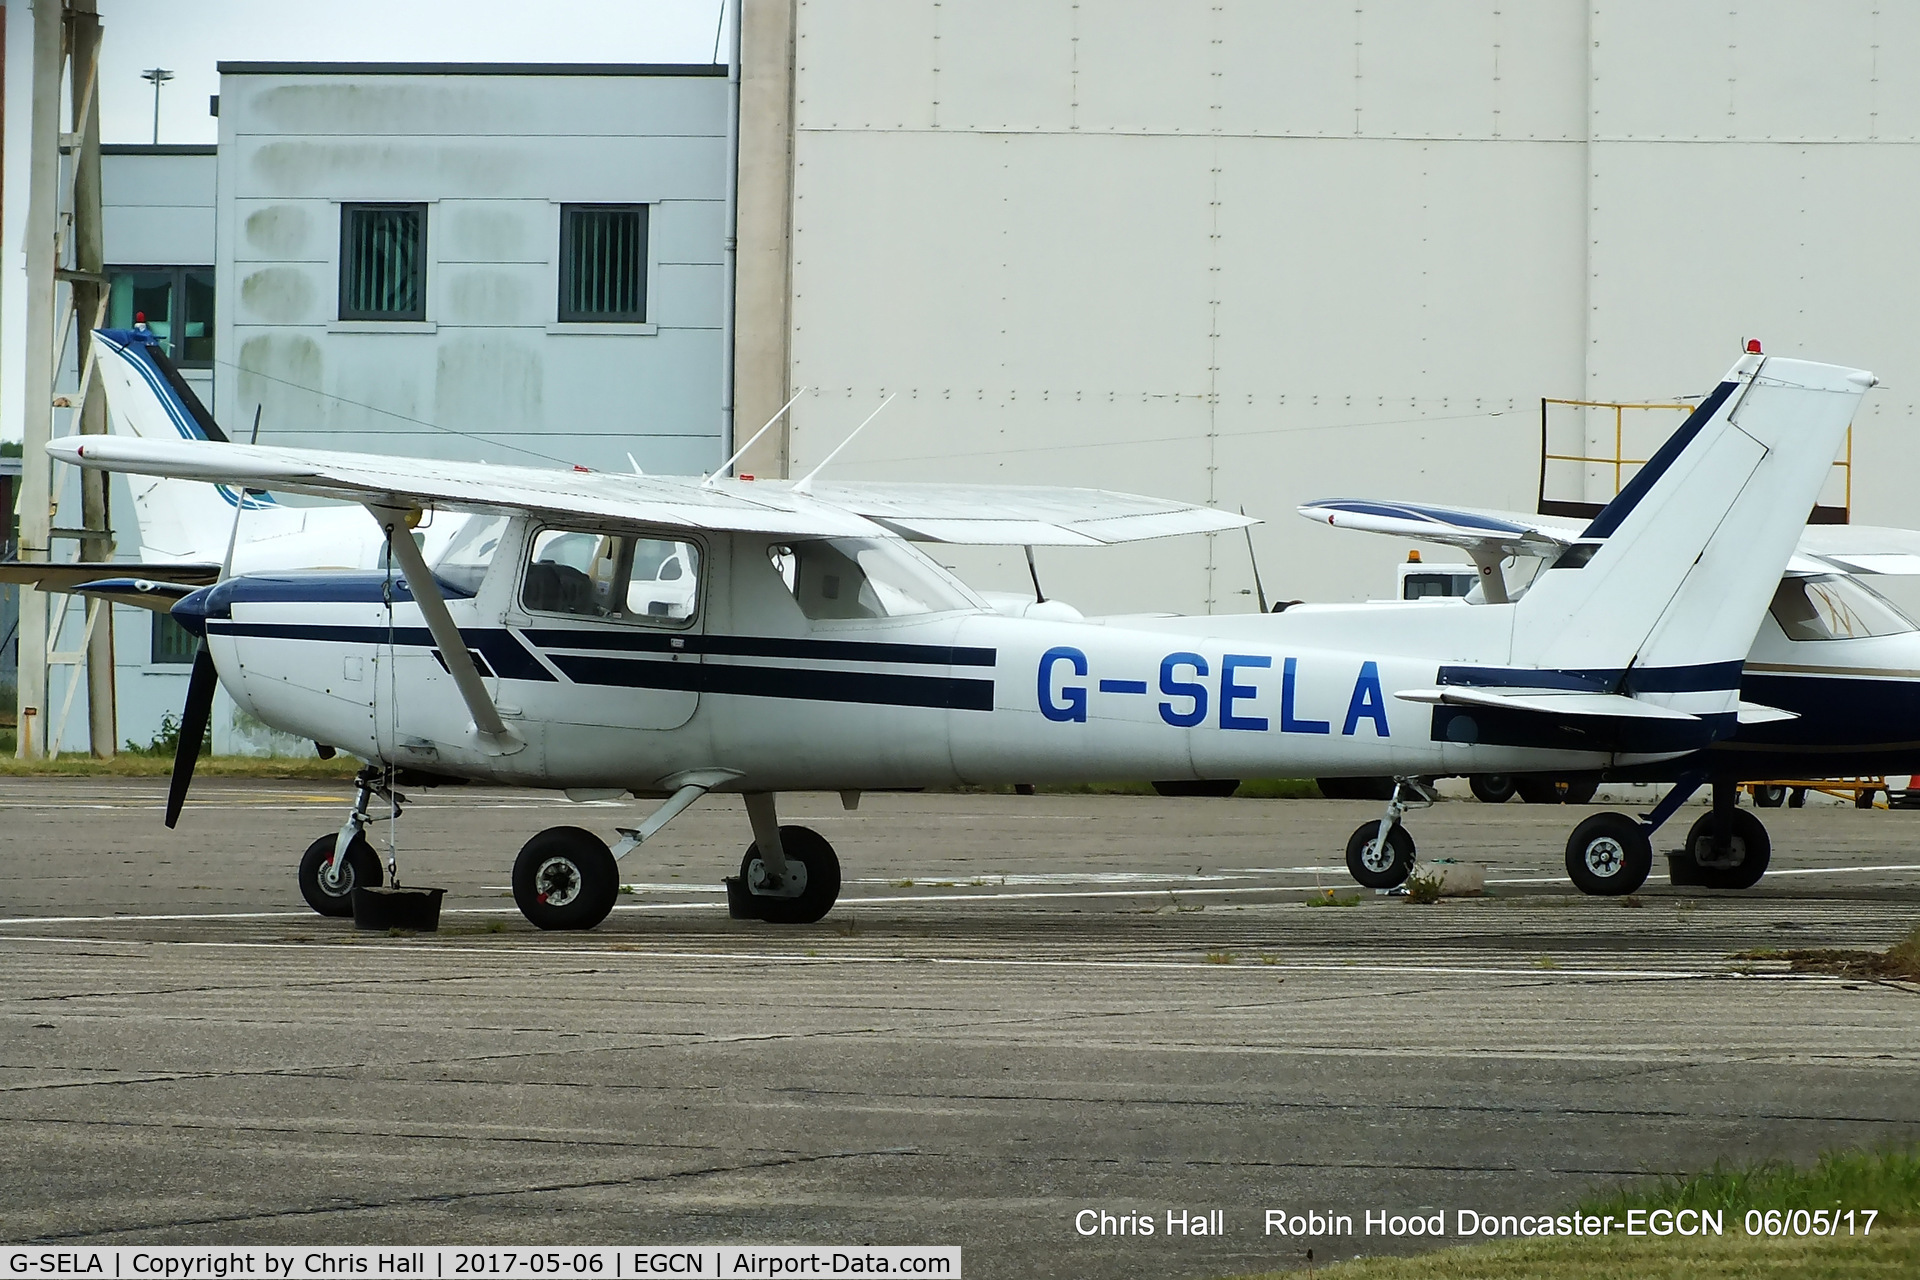 G-SELA, 1979 Cessna 152 C/N 152-82590, at Robin Hood Doncaster